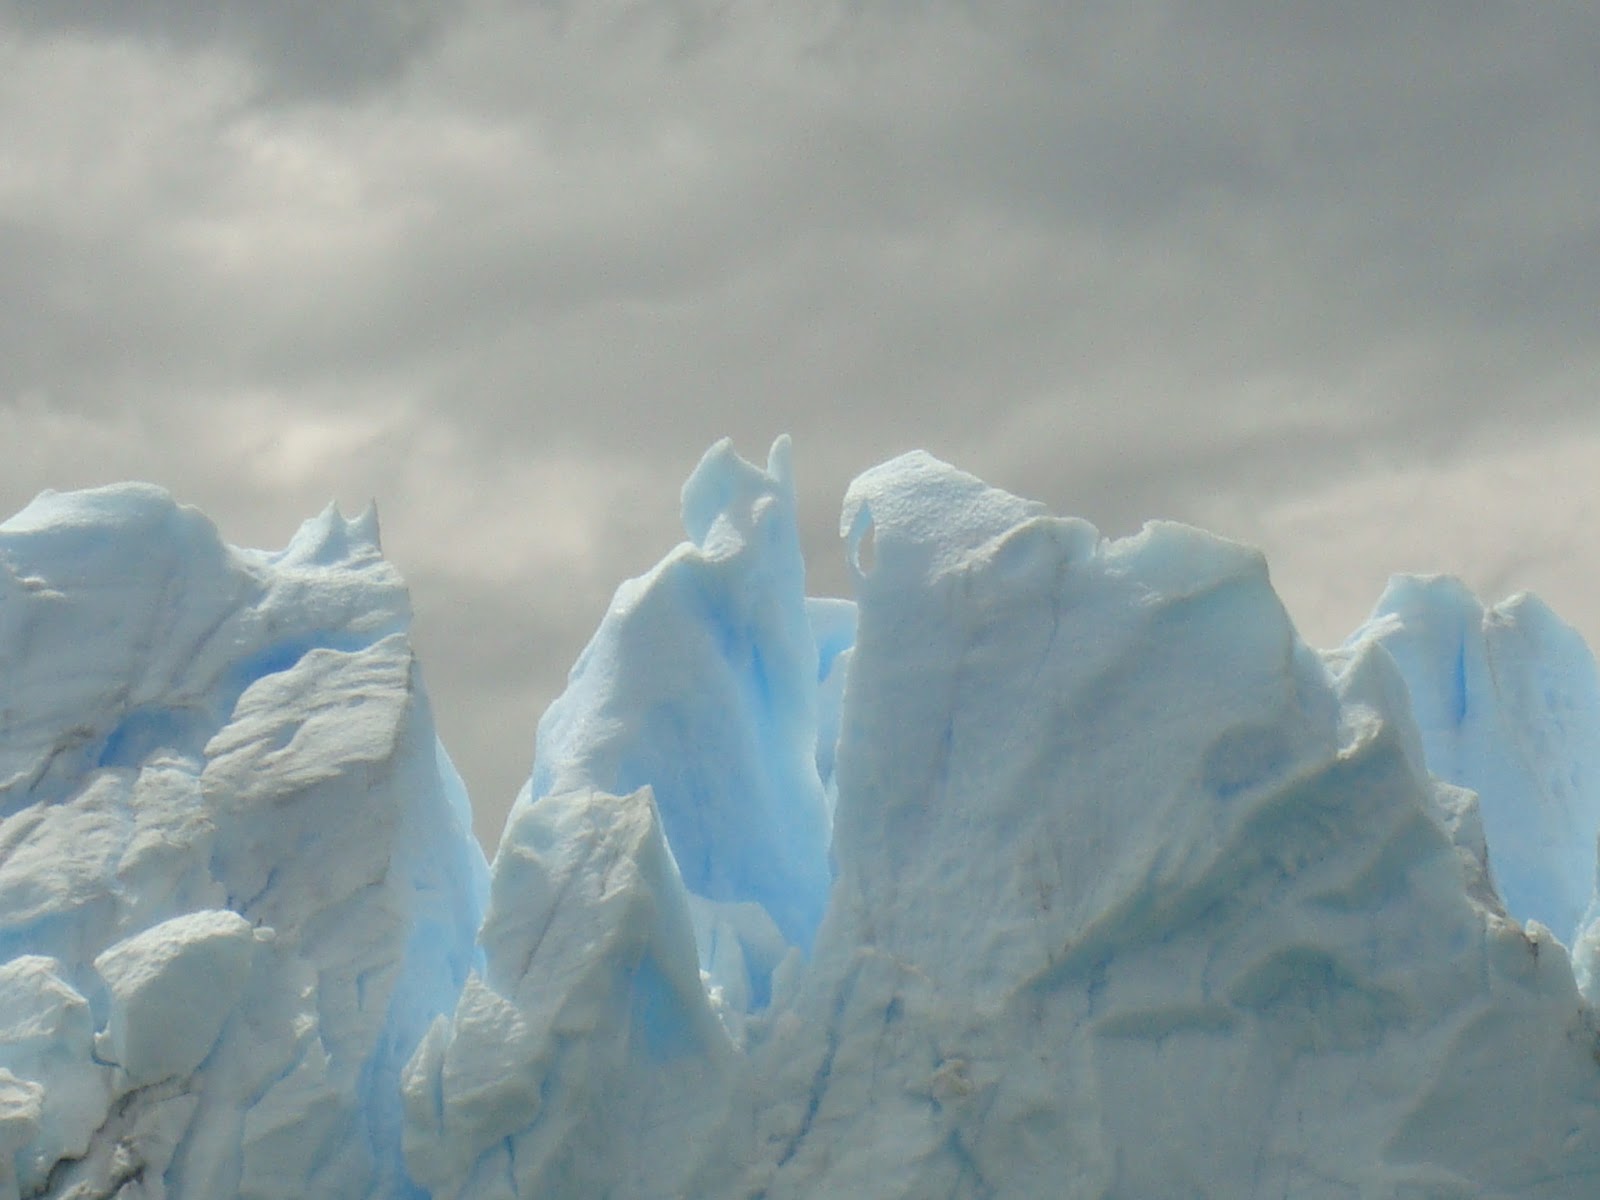 El glaciar Perito Moreno en Argentina. Esculturas en el hielo - EL AÑO DE LAS DOS PRIMAVERAS: 4 MESES VIVIENDO CHILE (8)